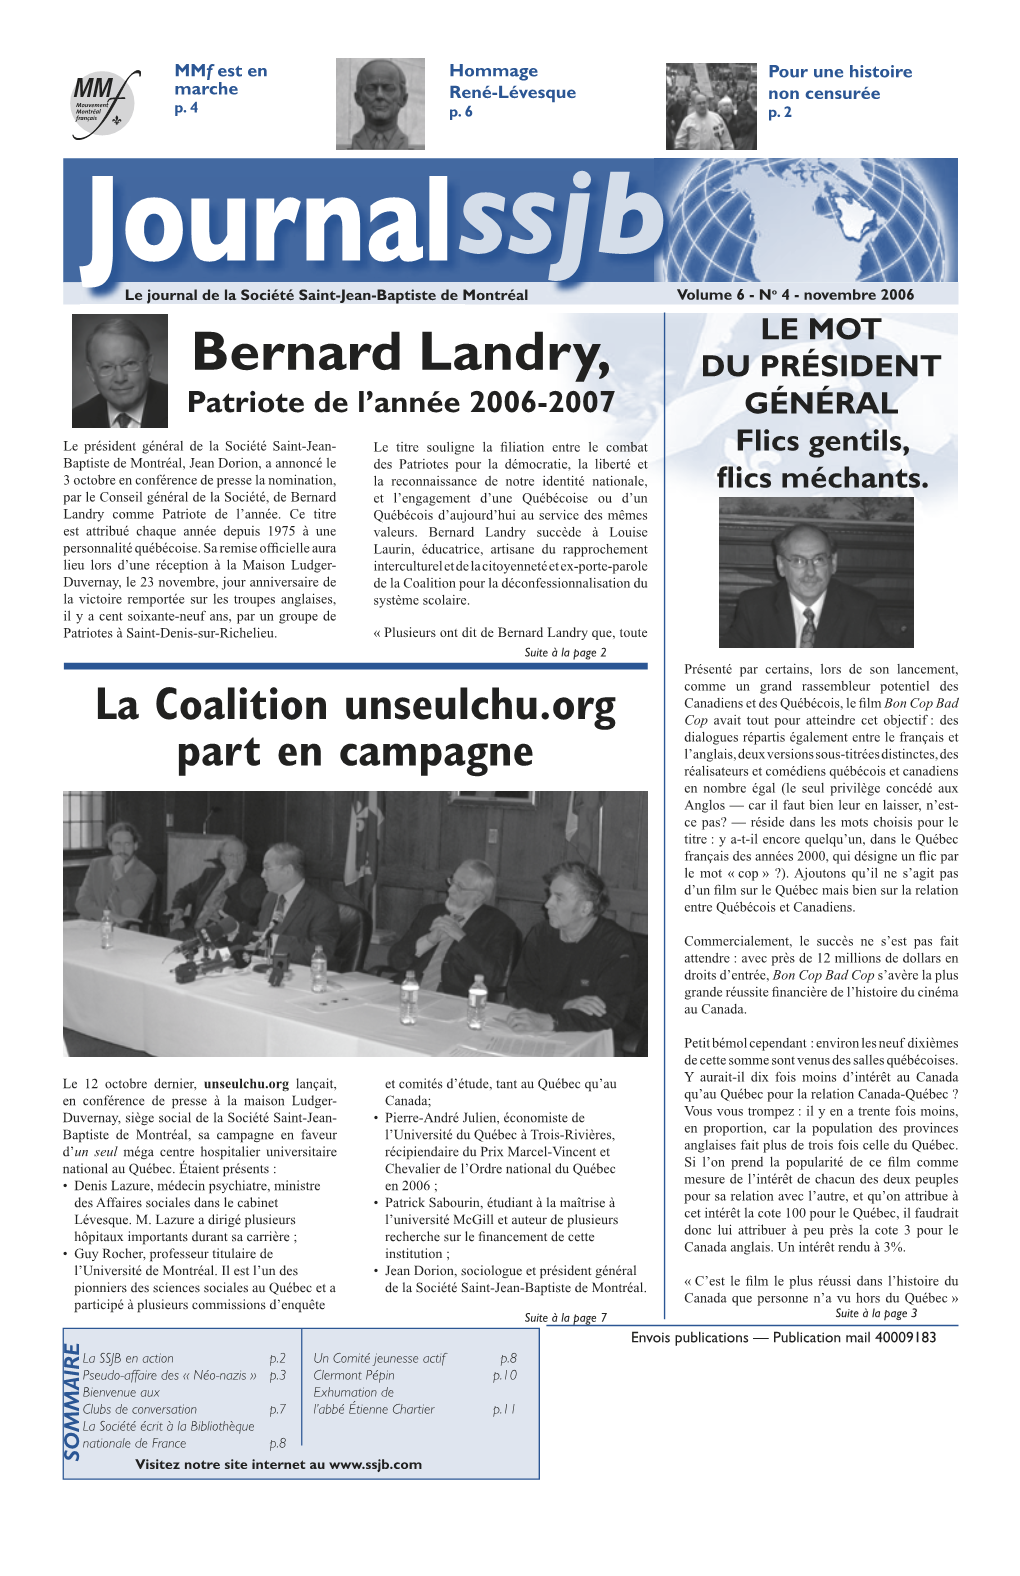 Bernard Landry, DU PRÉSIDENT Patriote De L’Année 2006-2007 GÉNÉRAL